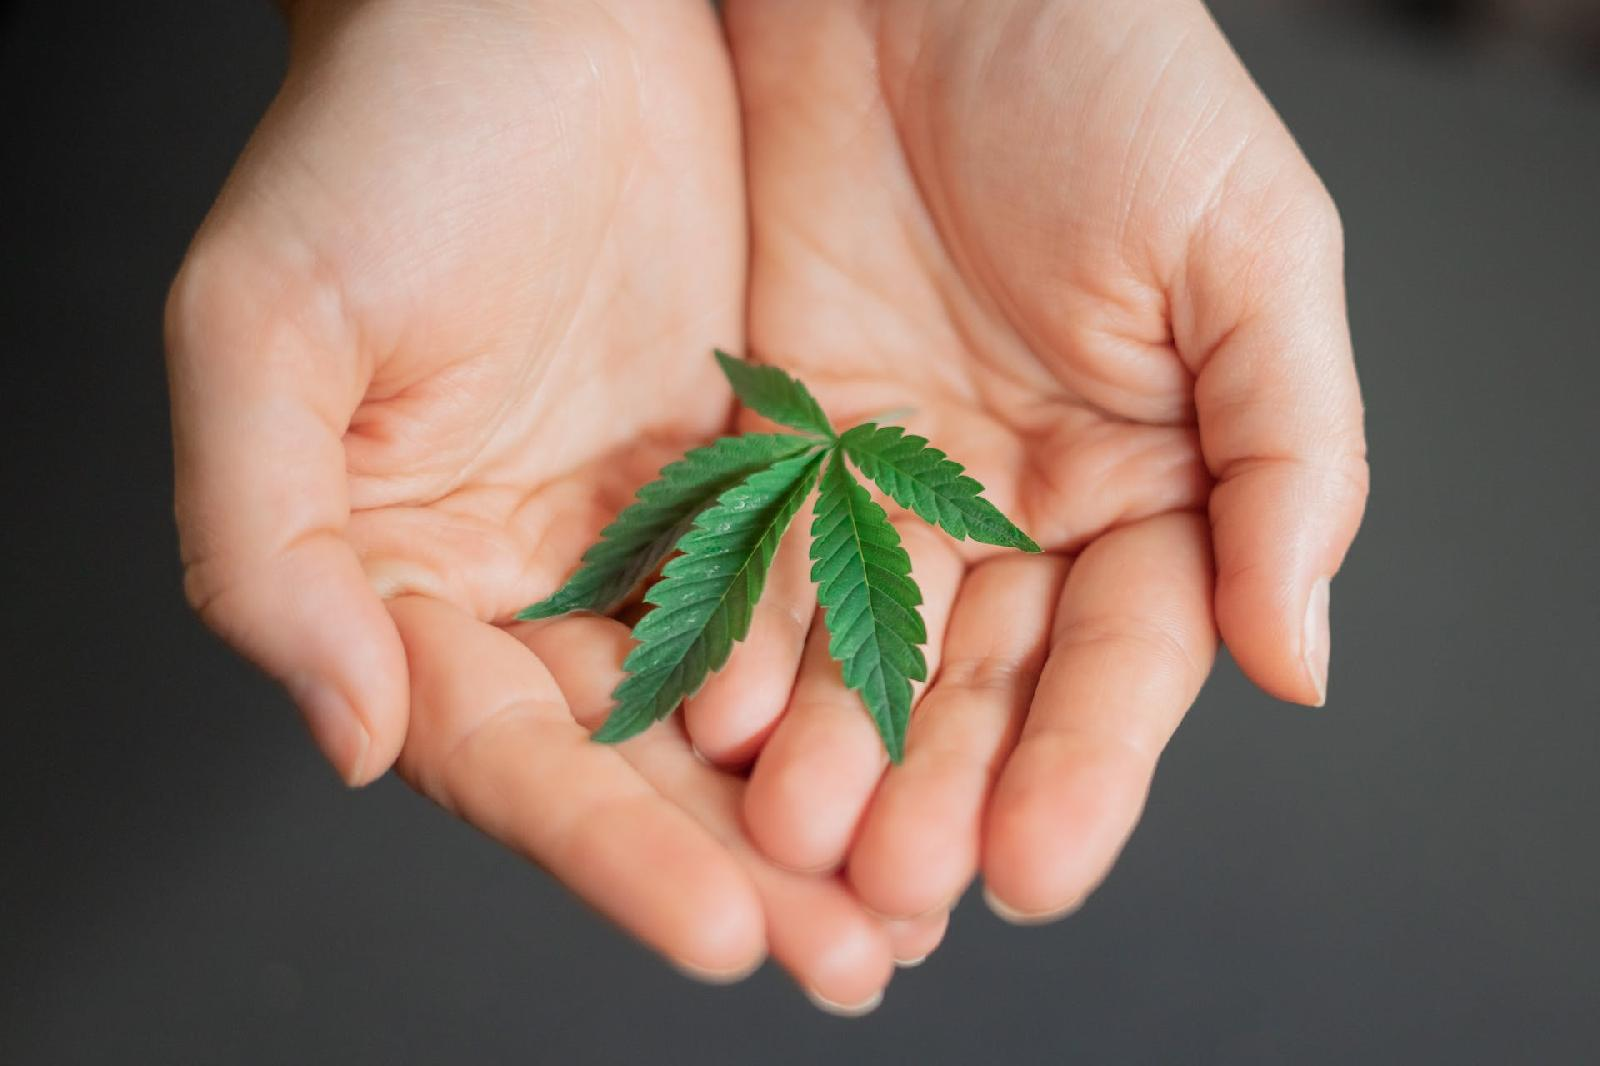 131319ce460b Decouvrez comment cultiver votre premier plant de cannabis en 10 etapes simples